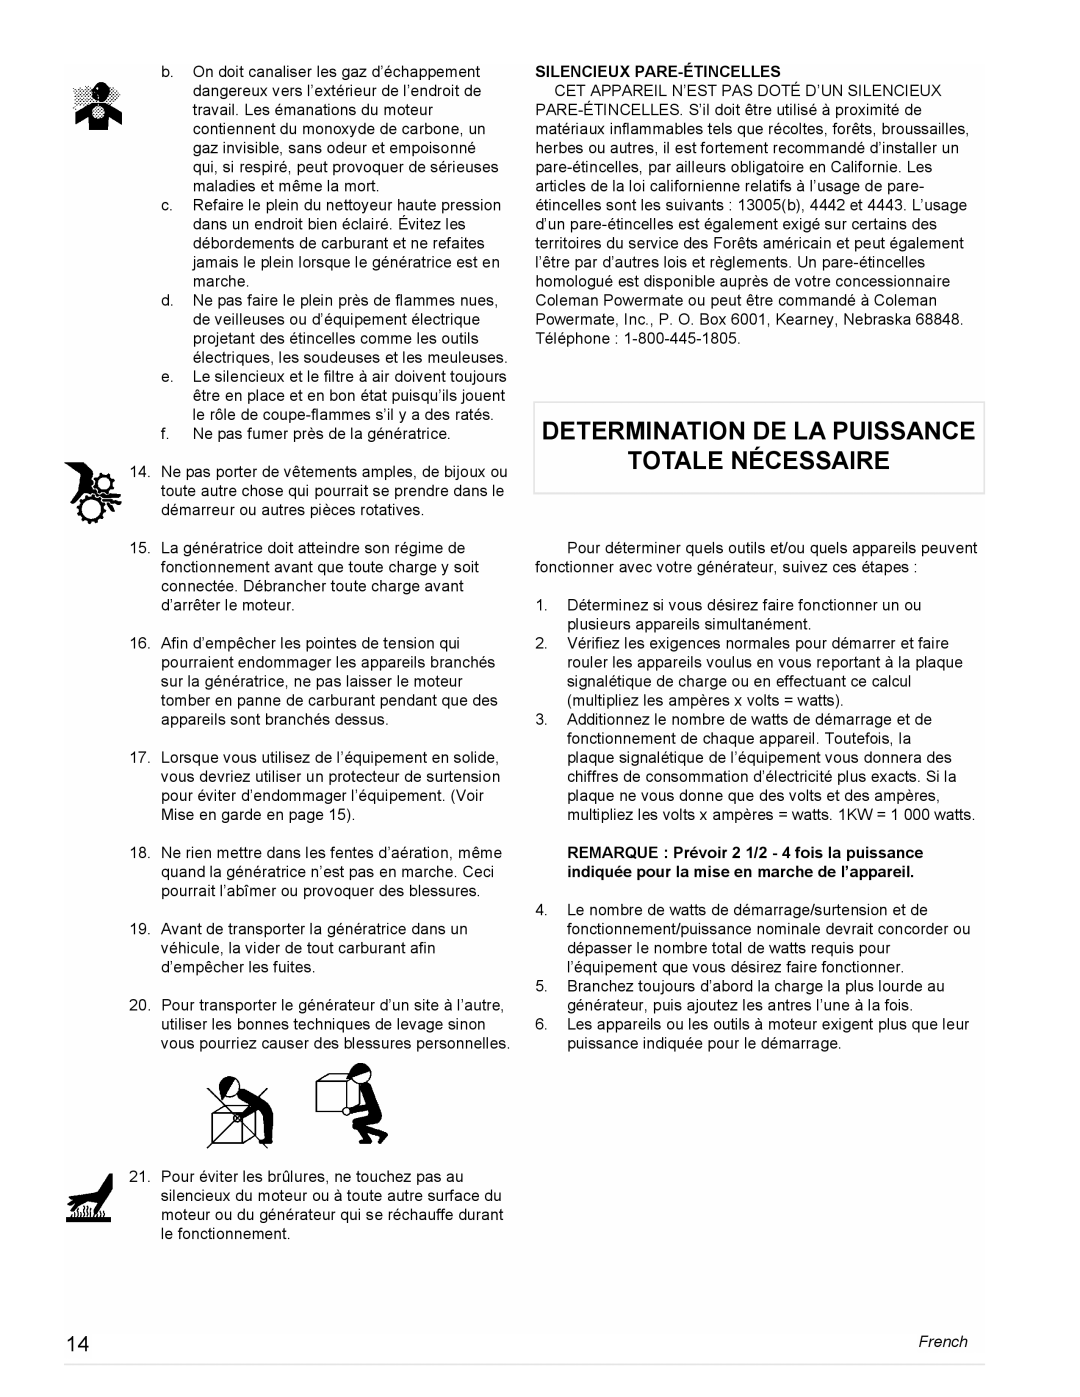 Powermate PM0474203, PL0473503 manual Determination De La Puissance Totale Nécessaire, Silencieux Pare-Étincelles, French 